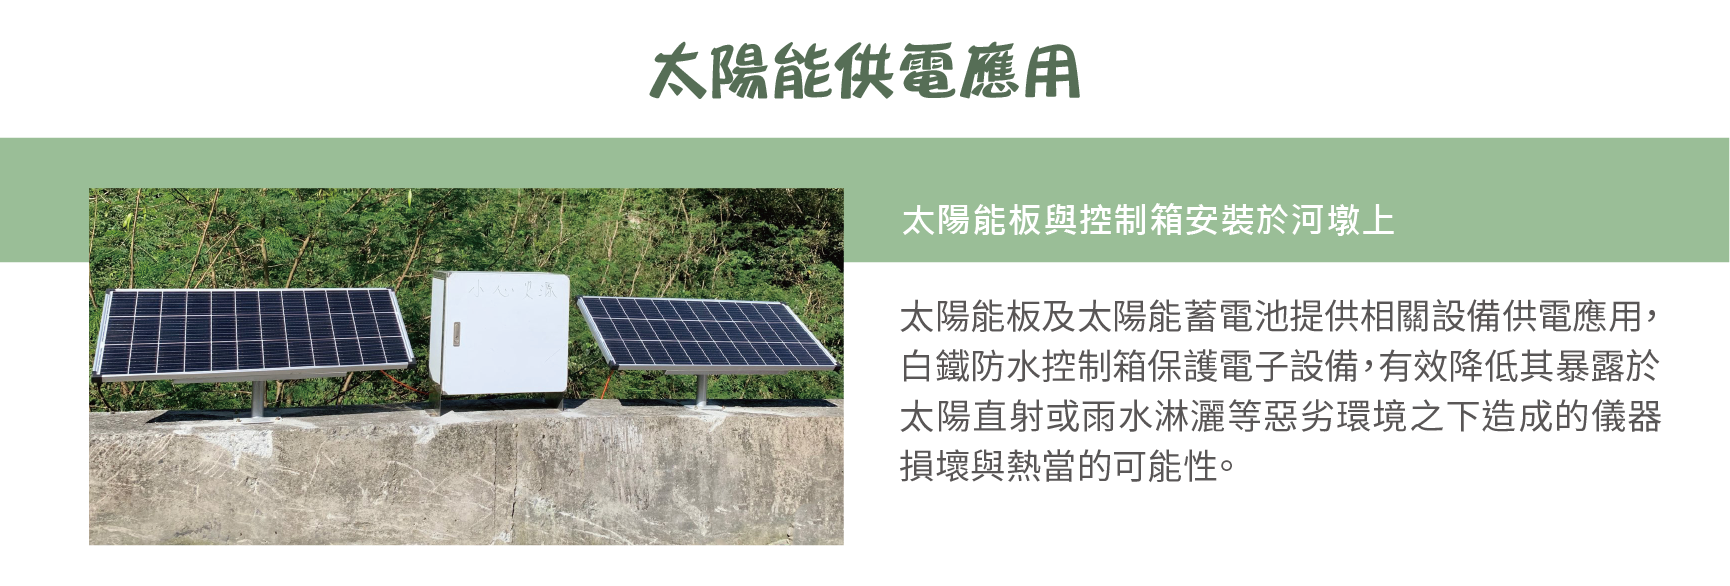 太陽能供電系統,太陽能板及太陽能蓄電池提供相關設備供電應用